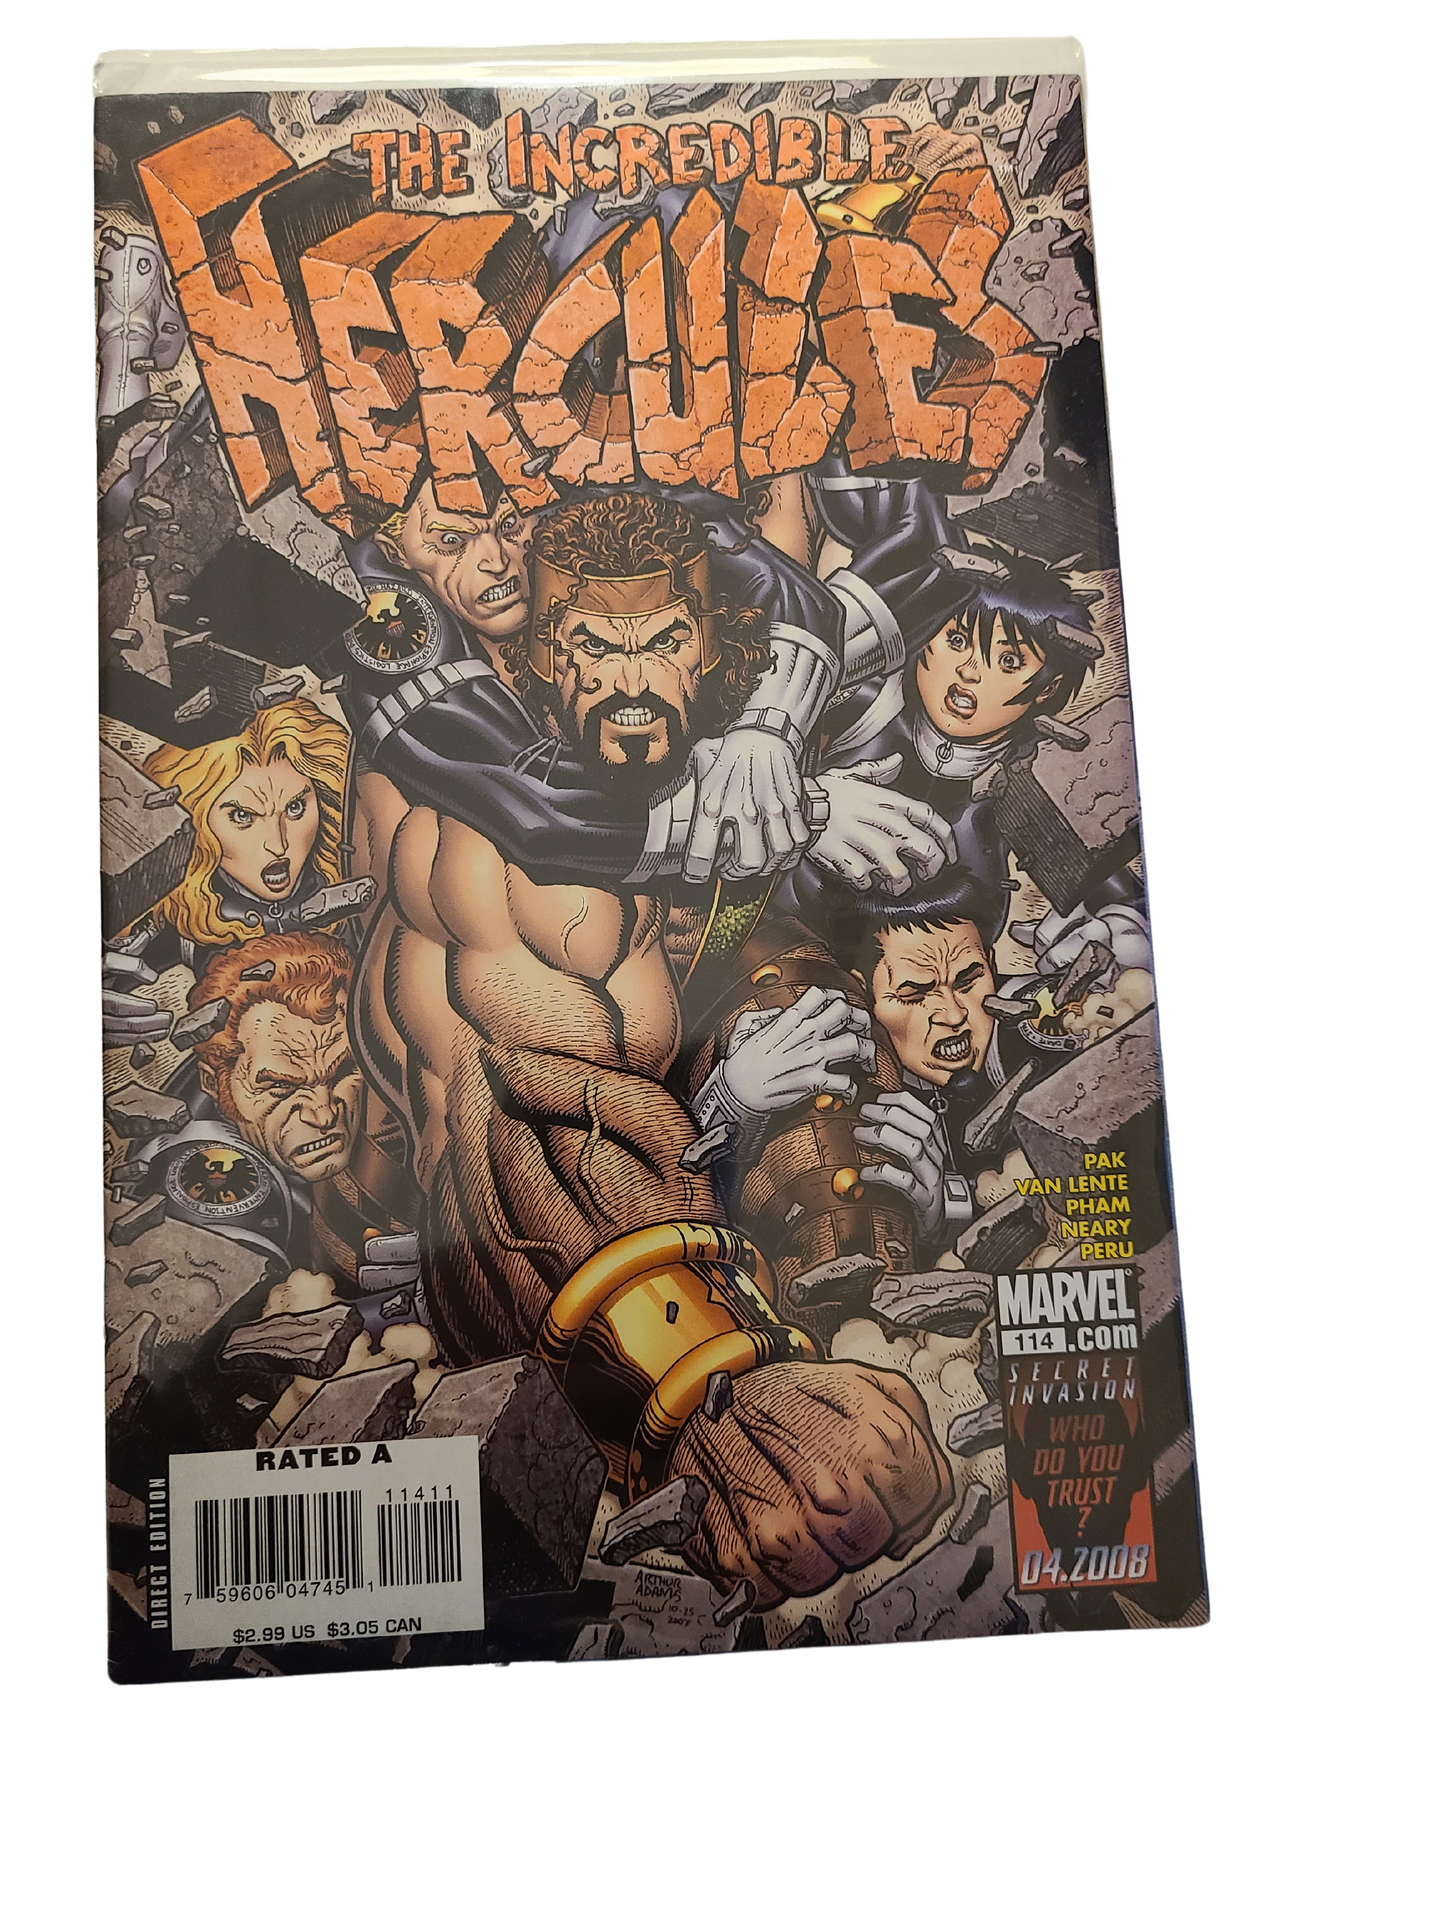 The Incredible Hercules #114